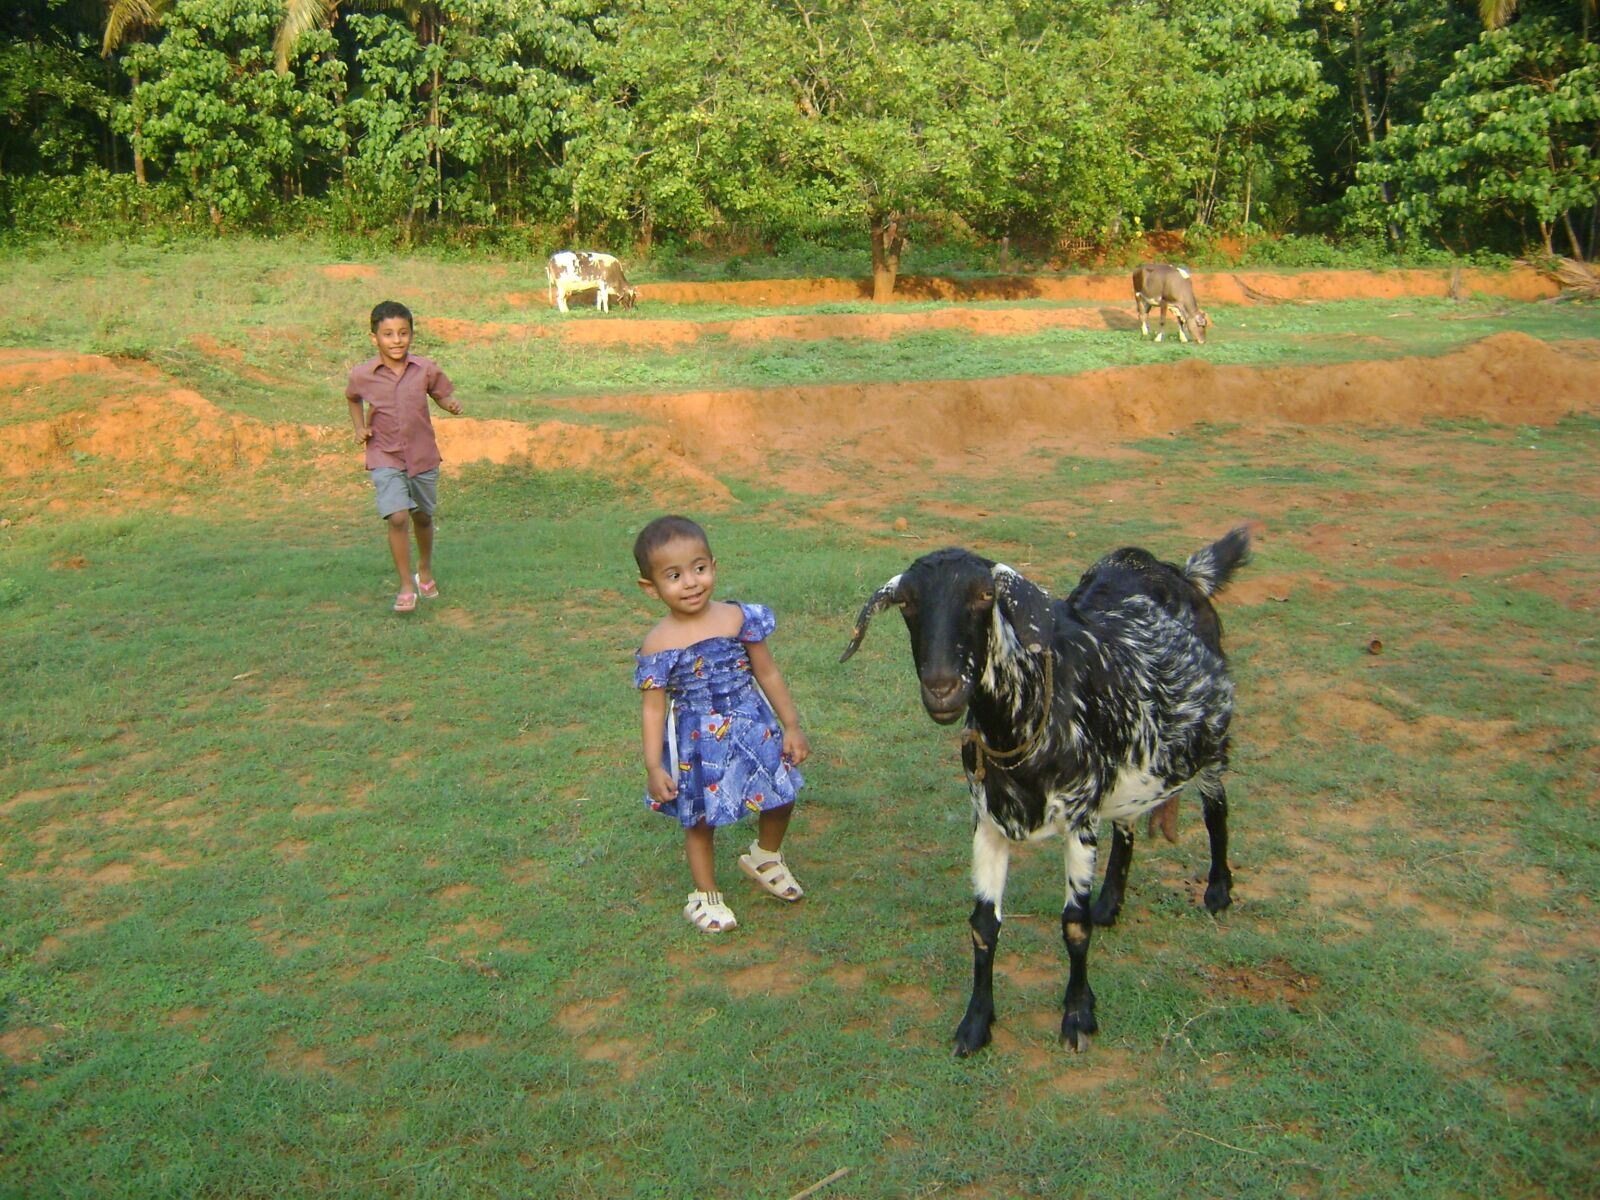 Sony DSC-S730 sample photo. Kids, goat, village photography